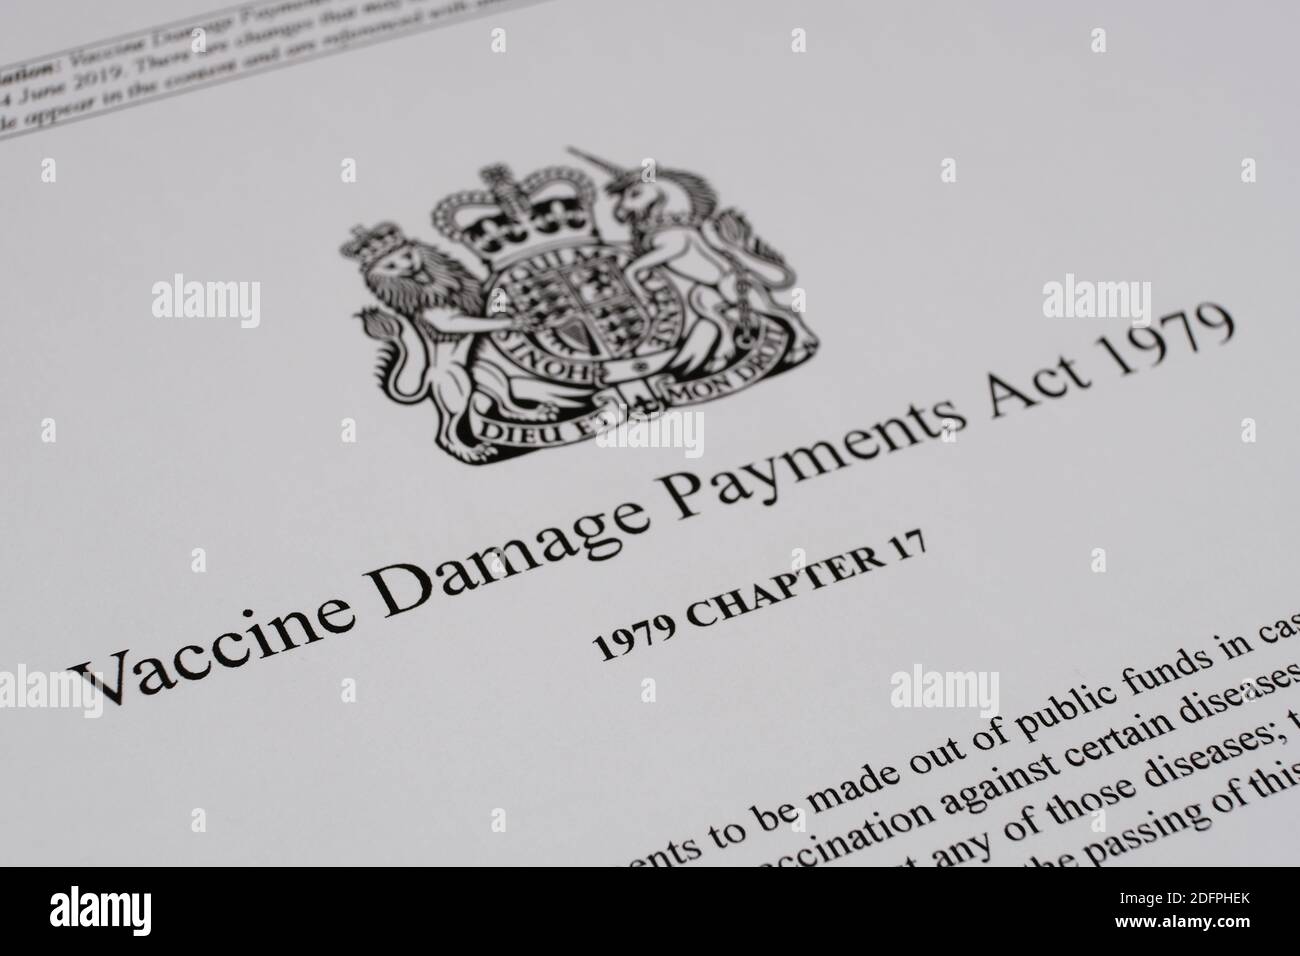 Stafford, Regno Unito - 6 dicembre 2020: Immagine ravvicinata del Vaccine Damage Payments Act del governo britannico. Foto Stock